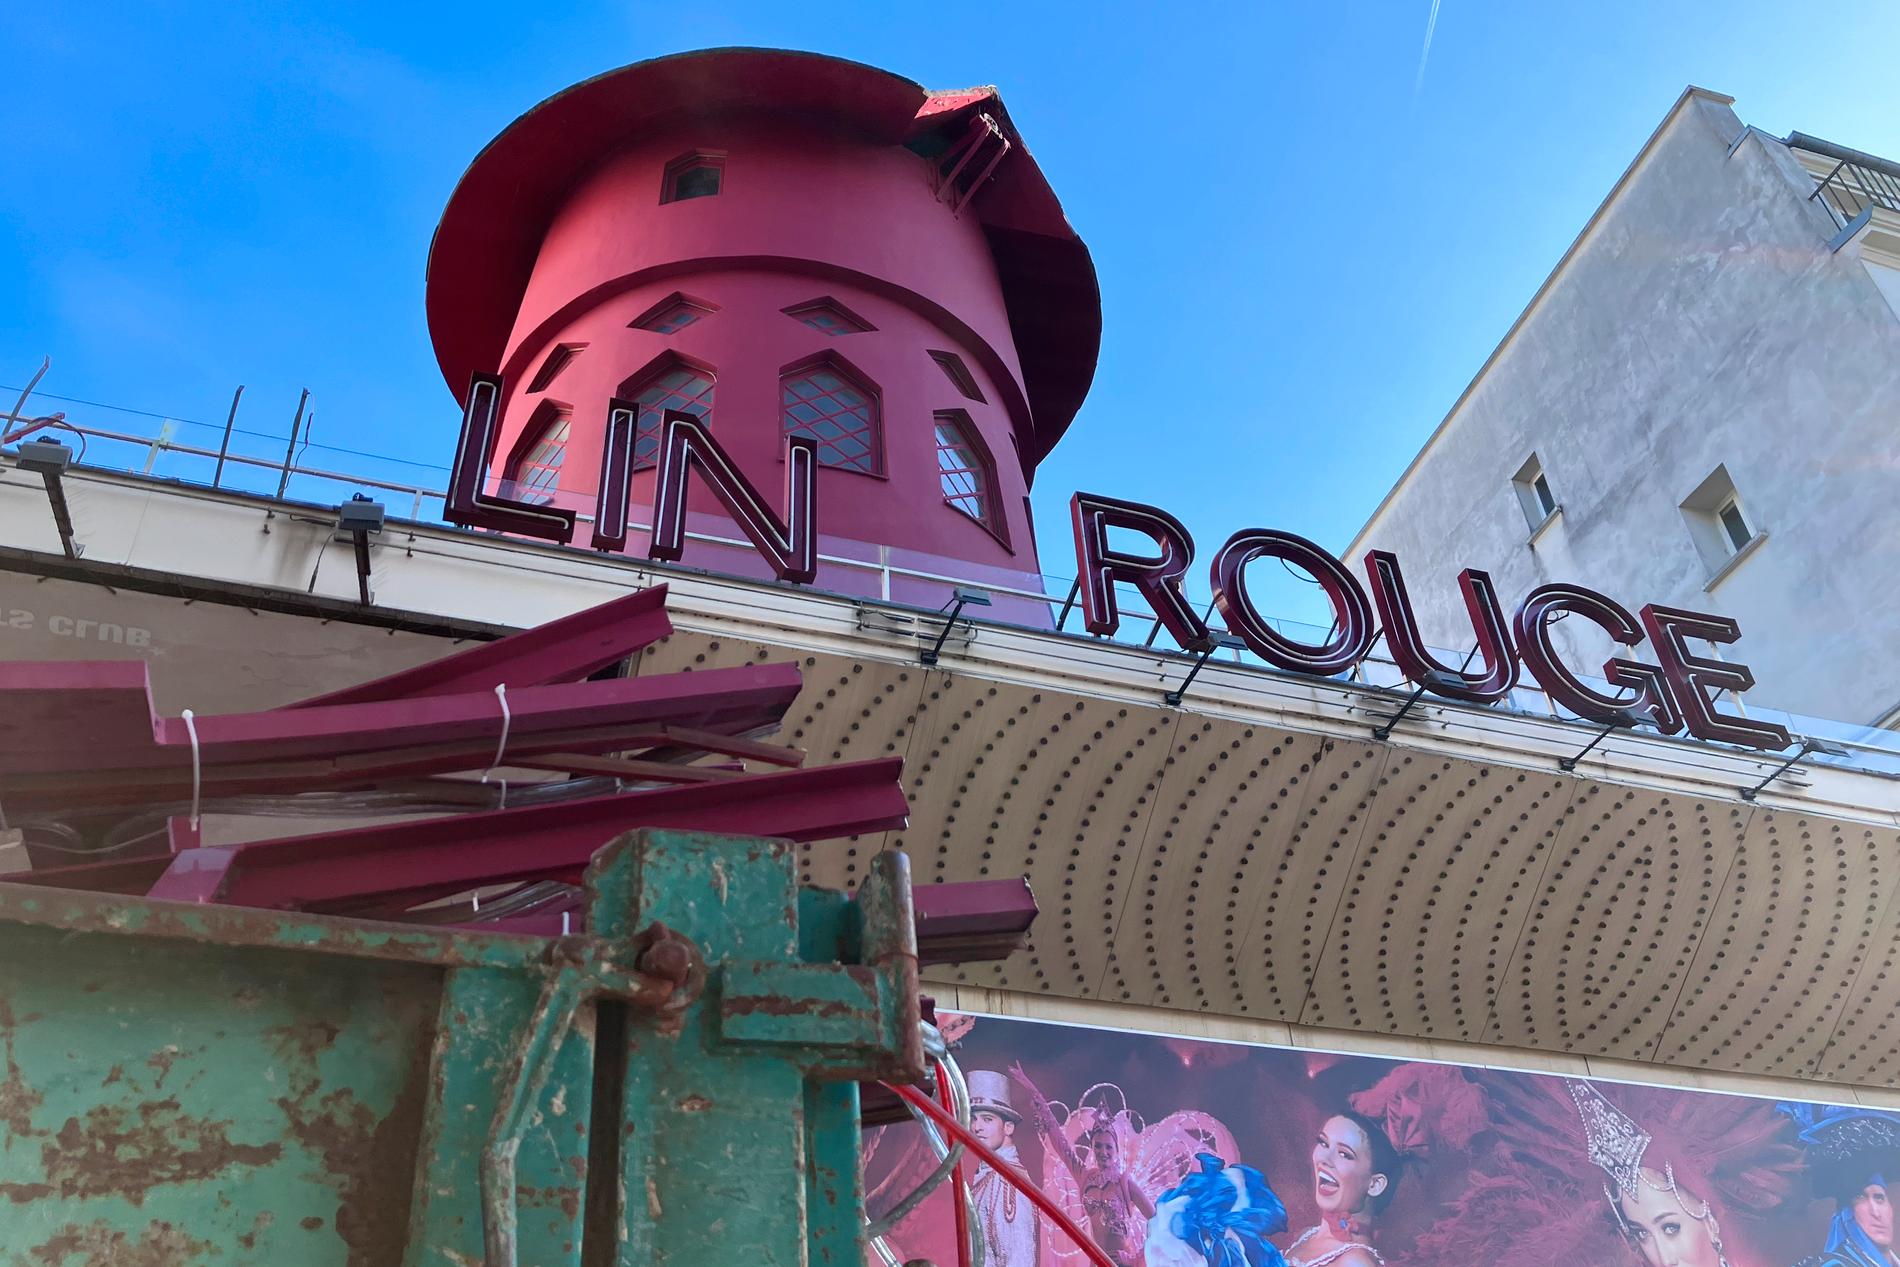 Moulin Rouge (på franska "röd kvarn") är en klassisk kabaréscen i Frankrikes huvudstad Paris.